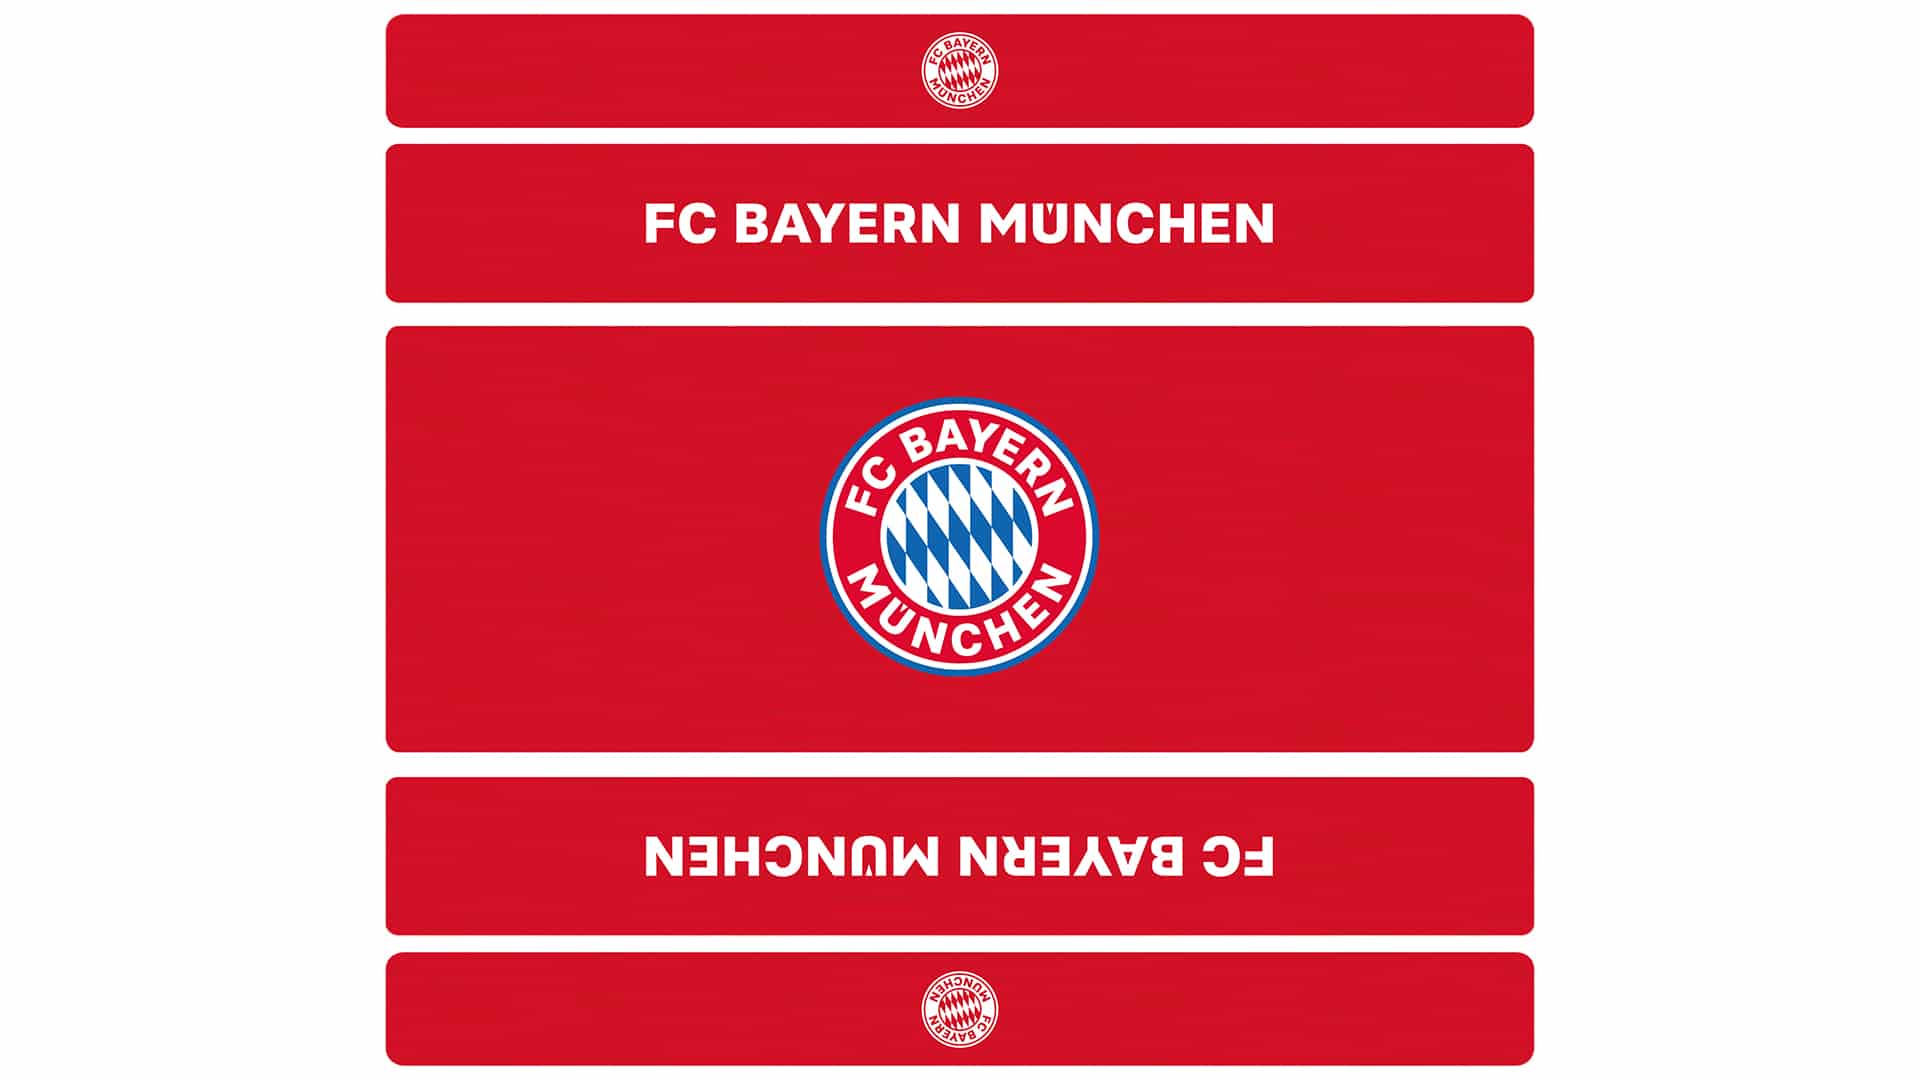 Eine Draufsicht auf das Design der Bierzeltgarnitur mit Lehne FC Bayern München.